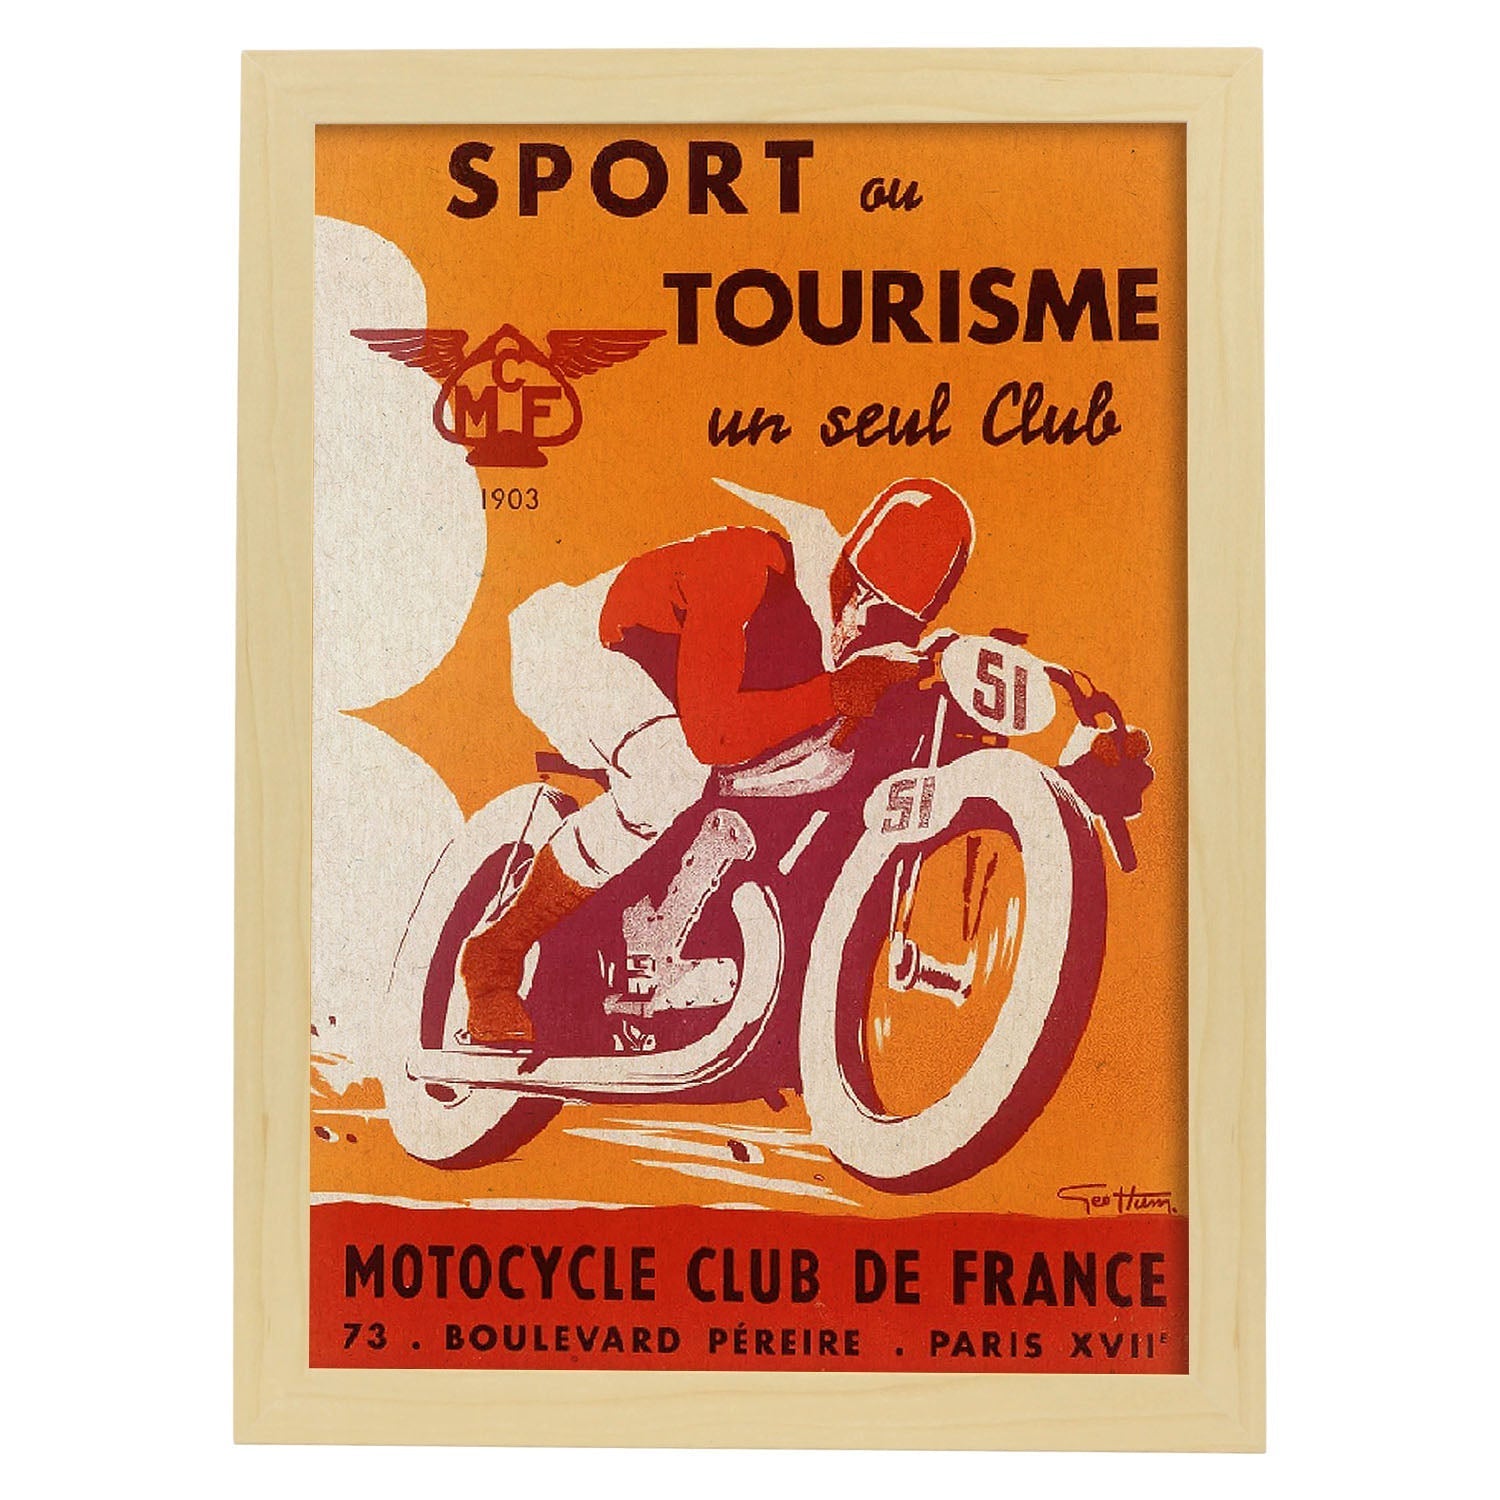 Poster vintage. Anuncio vintage del Sport ou Tourisme un seul Club Motorcycle Club de France.-Artwork-Nacnic-A3-Marco Madera clara-Nacnic Estudio SL